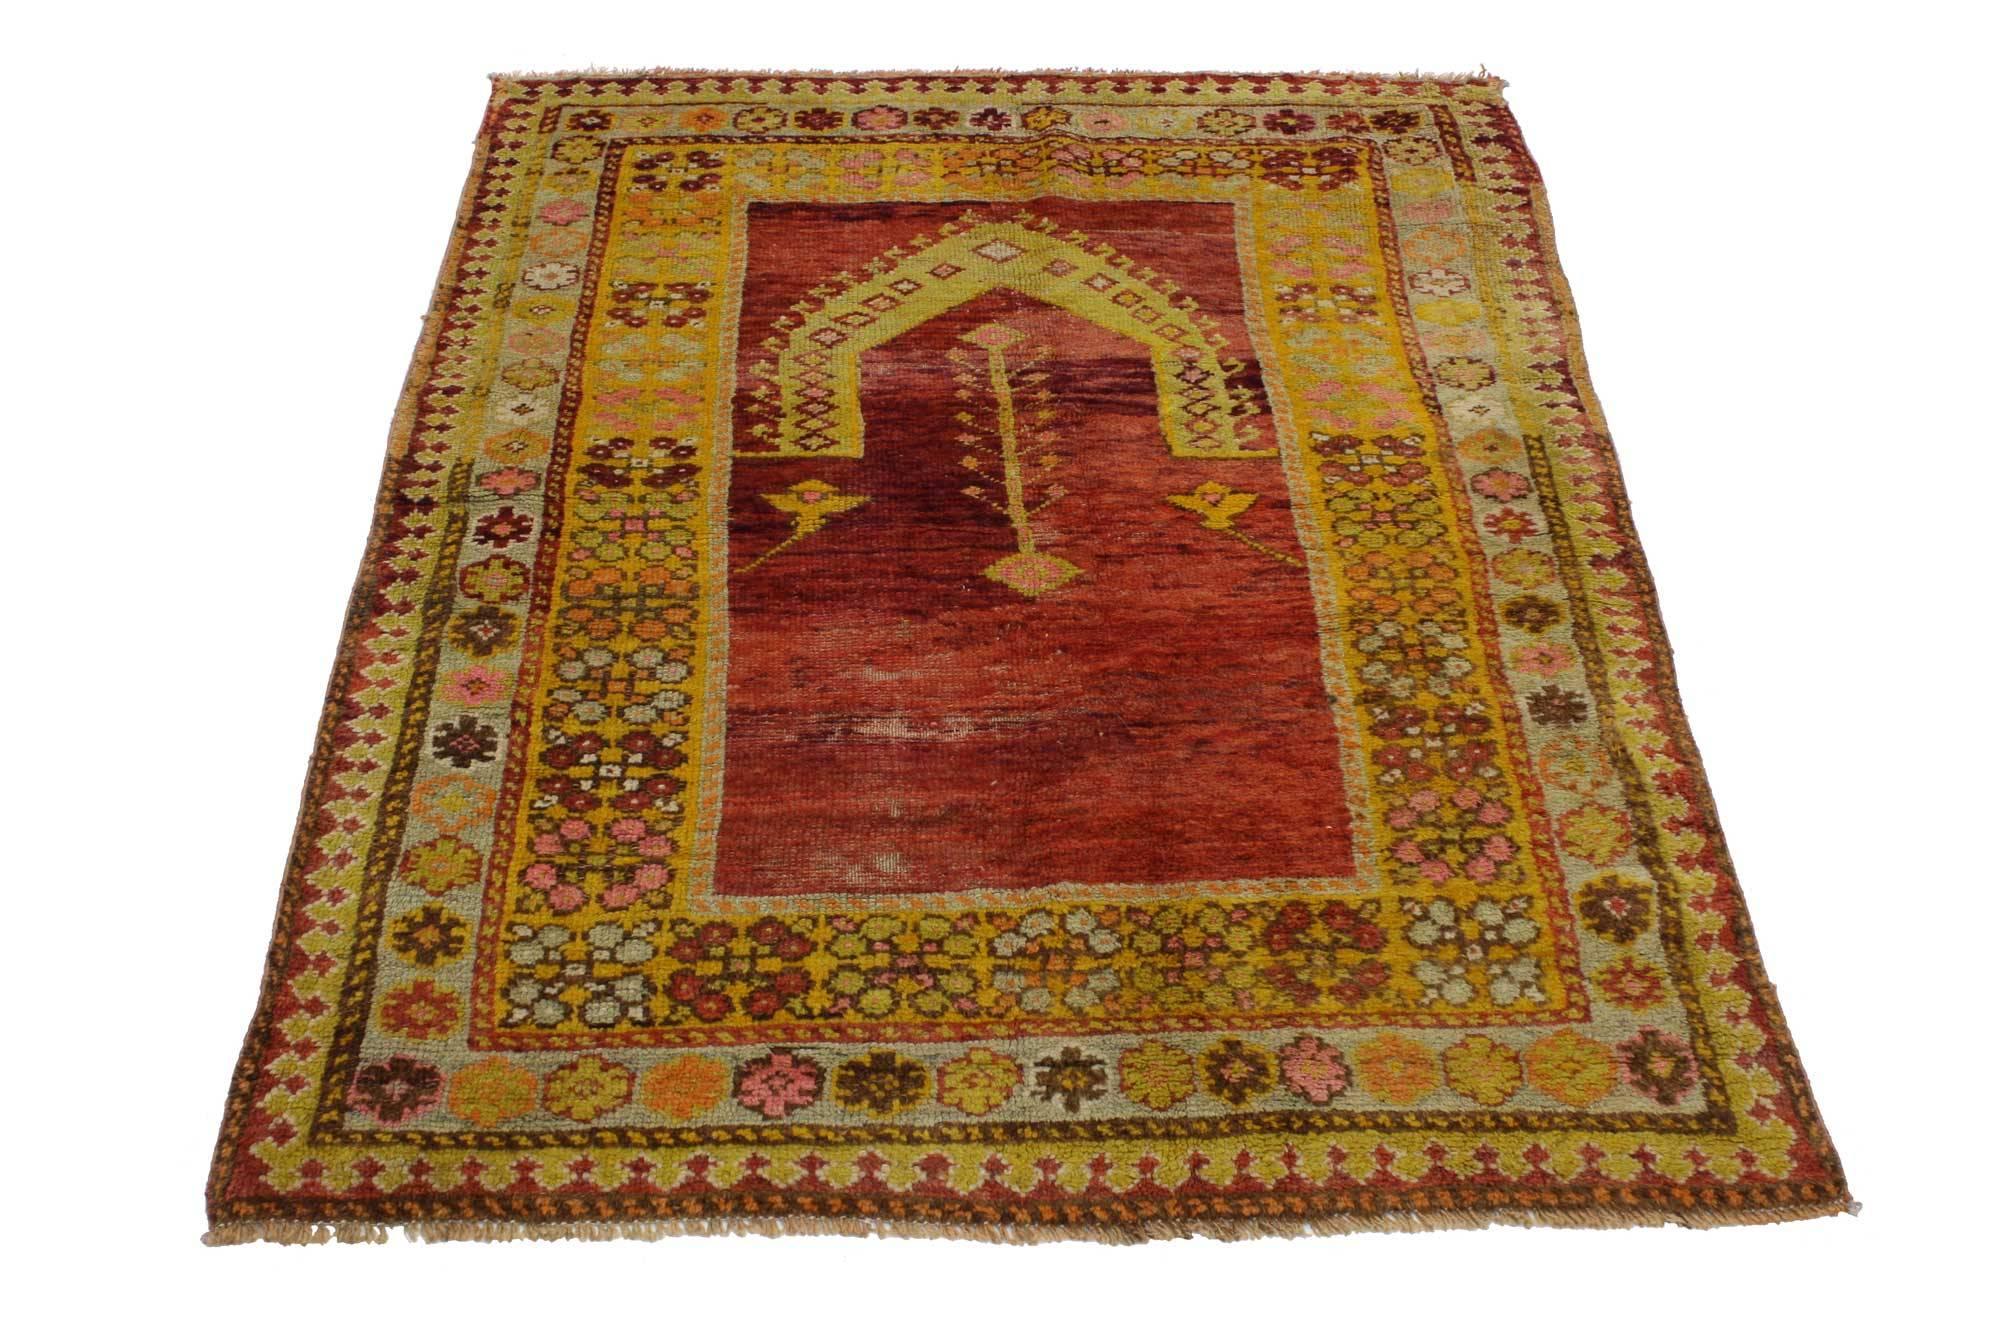 51748 Vieux tapis turc Oushak, tapis de prière turc. Ce tapis de prière Oushak turc vintage en laine nouée à la main présente un motif de Mihrab sur un fond rouge écarlate abrasé. Les premiers tapis de prière ont été fabriqués vers le milieu du 15e